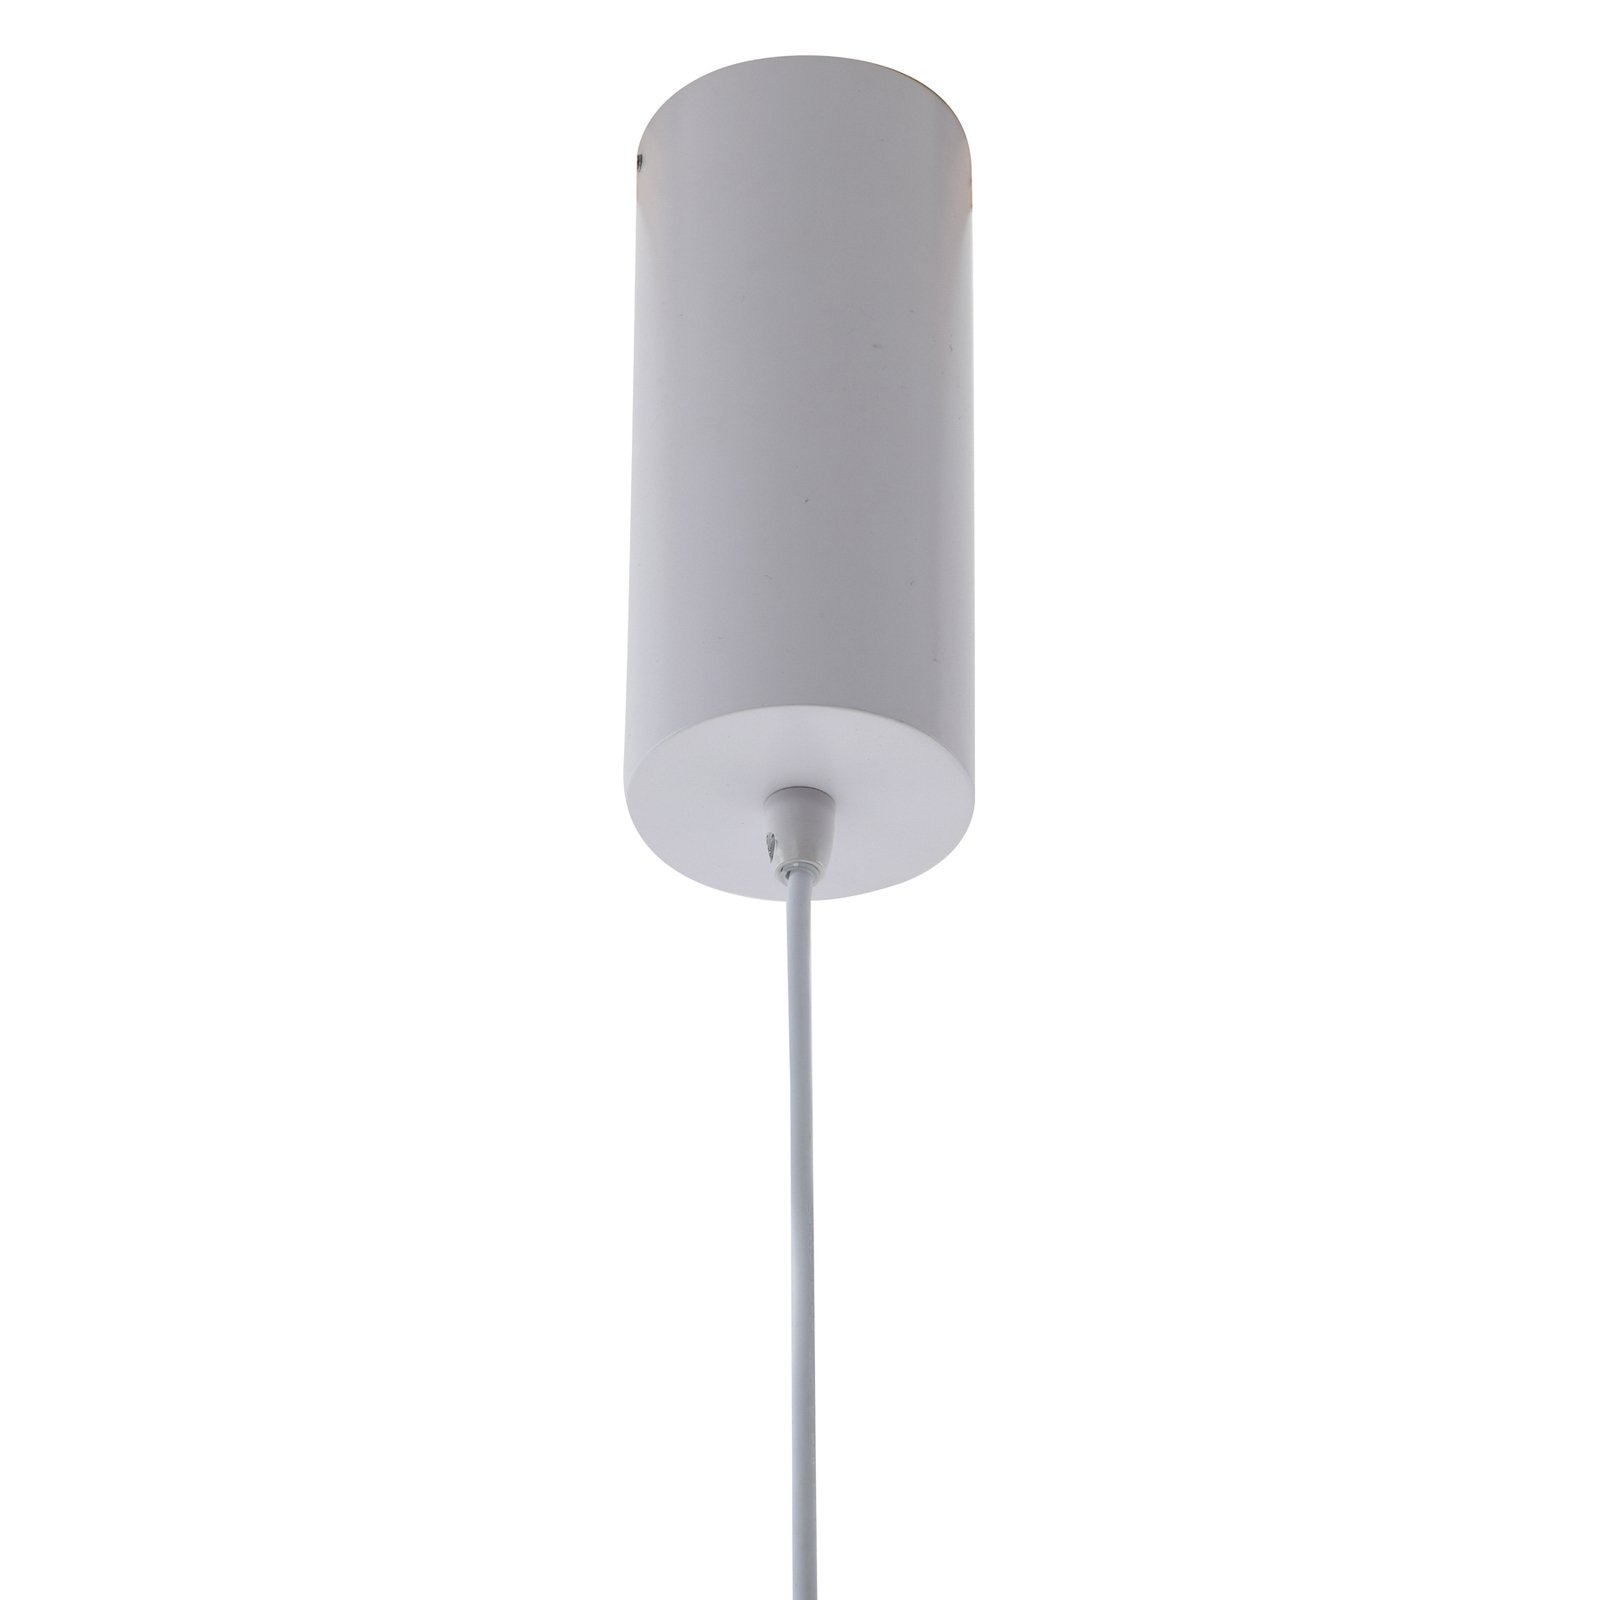 Lucande Orasa LED rippvalgusti, klaas, valge/selge, Ø 43 cm